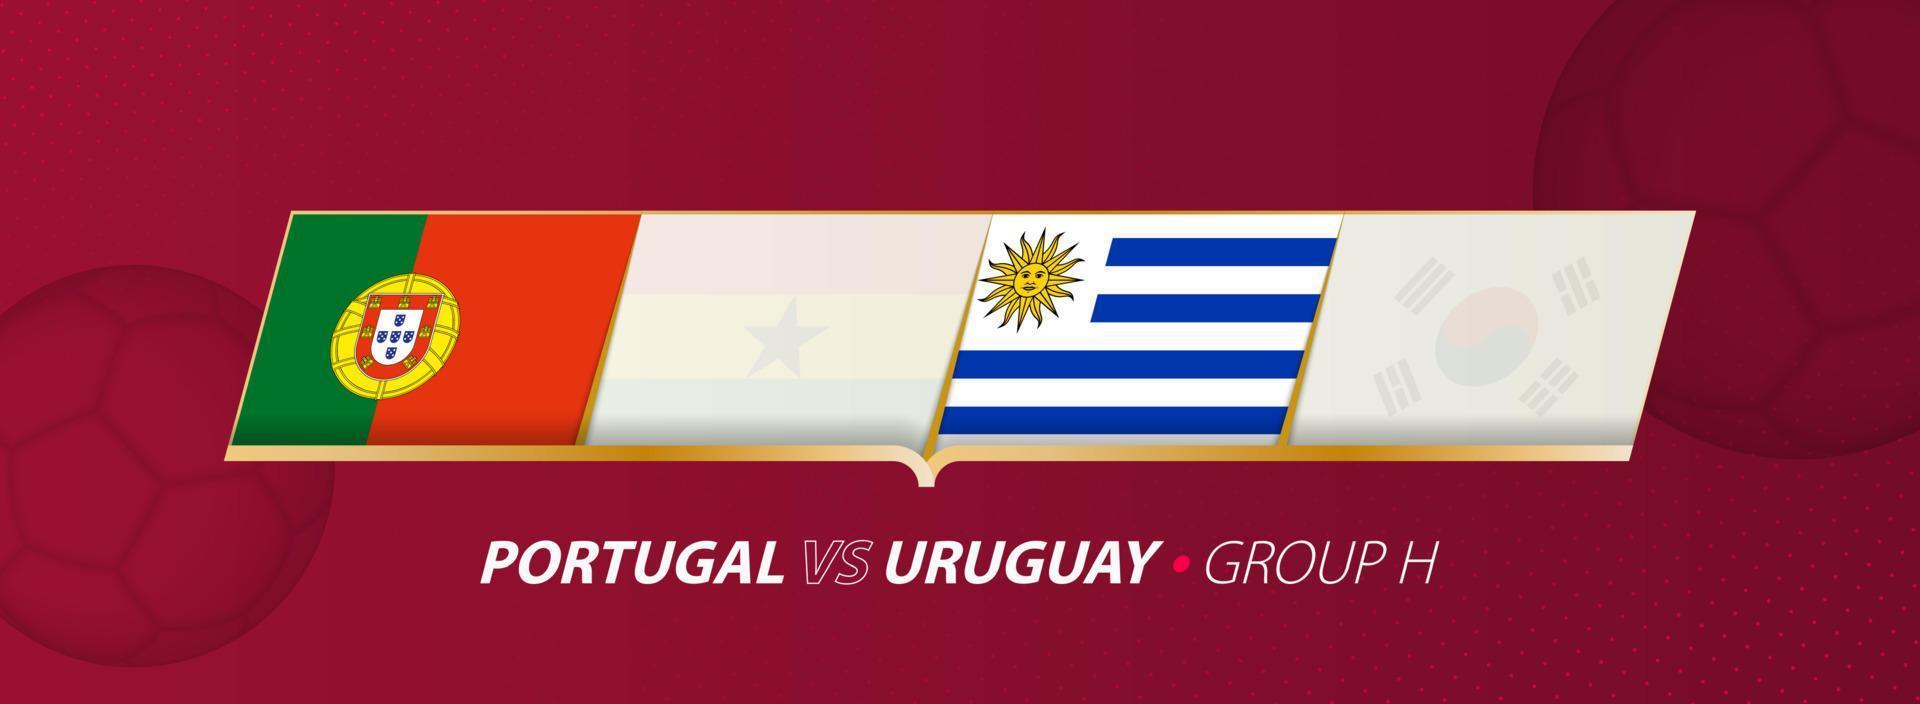 ilustración del partido de fútbol portugal - uruguay en el grupo a. vector